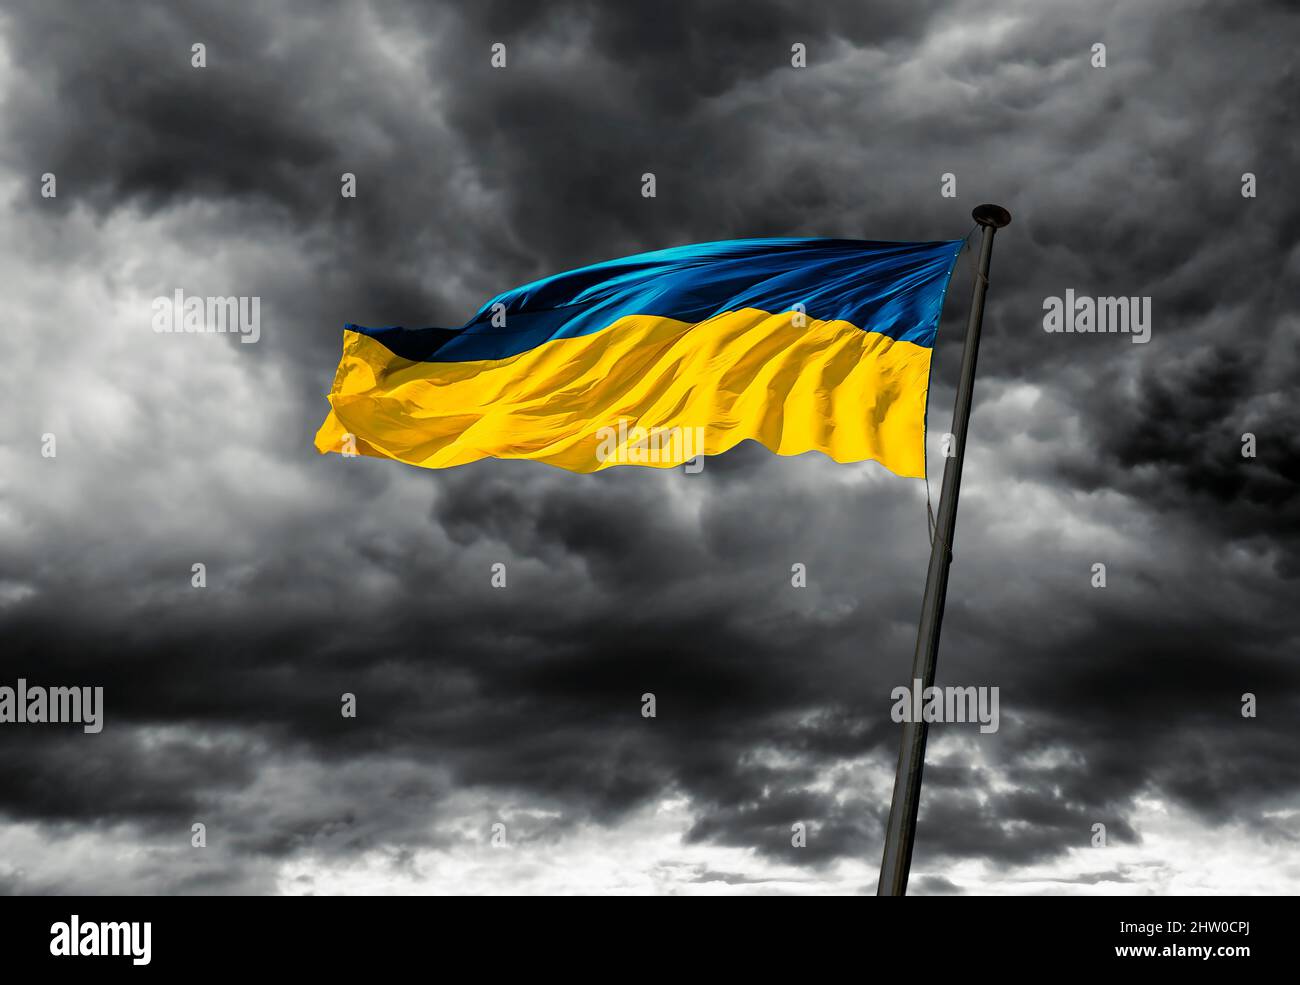 Eine ukrainische Flagge flattert im Wind gegen einen dunklen bewölkten Himmel. Stockfoto